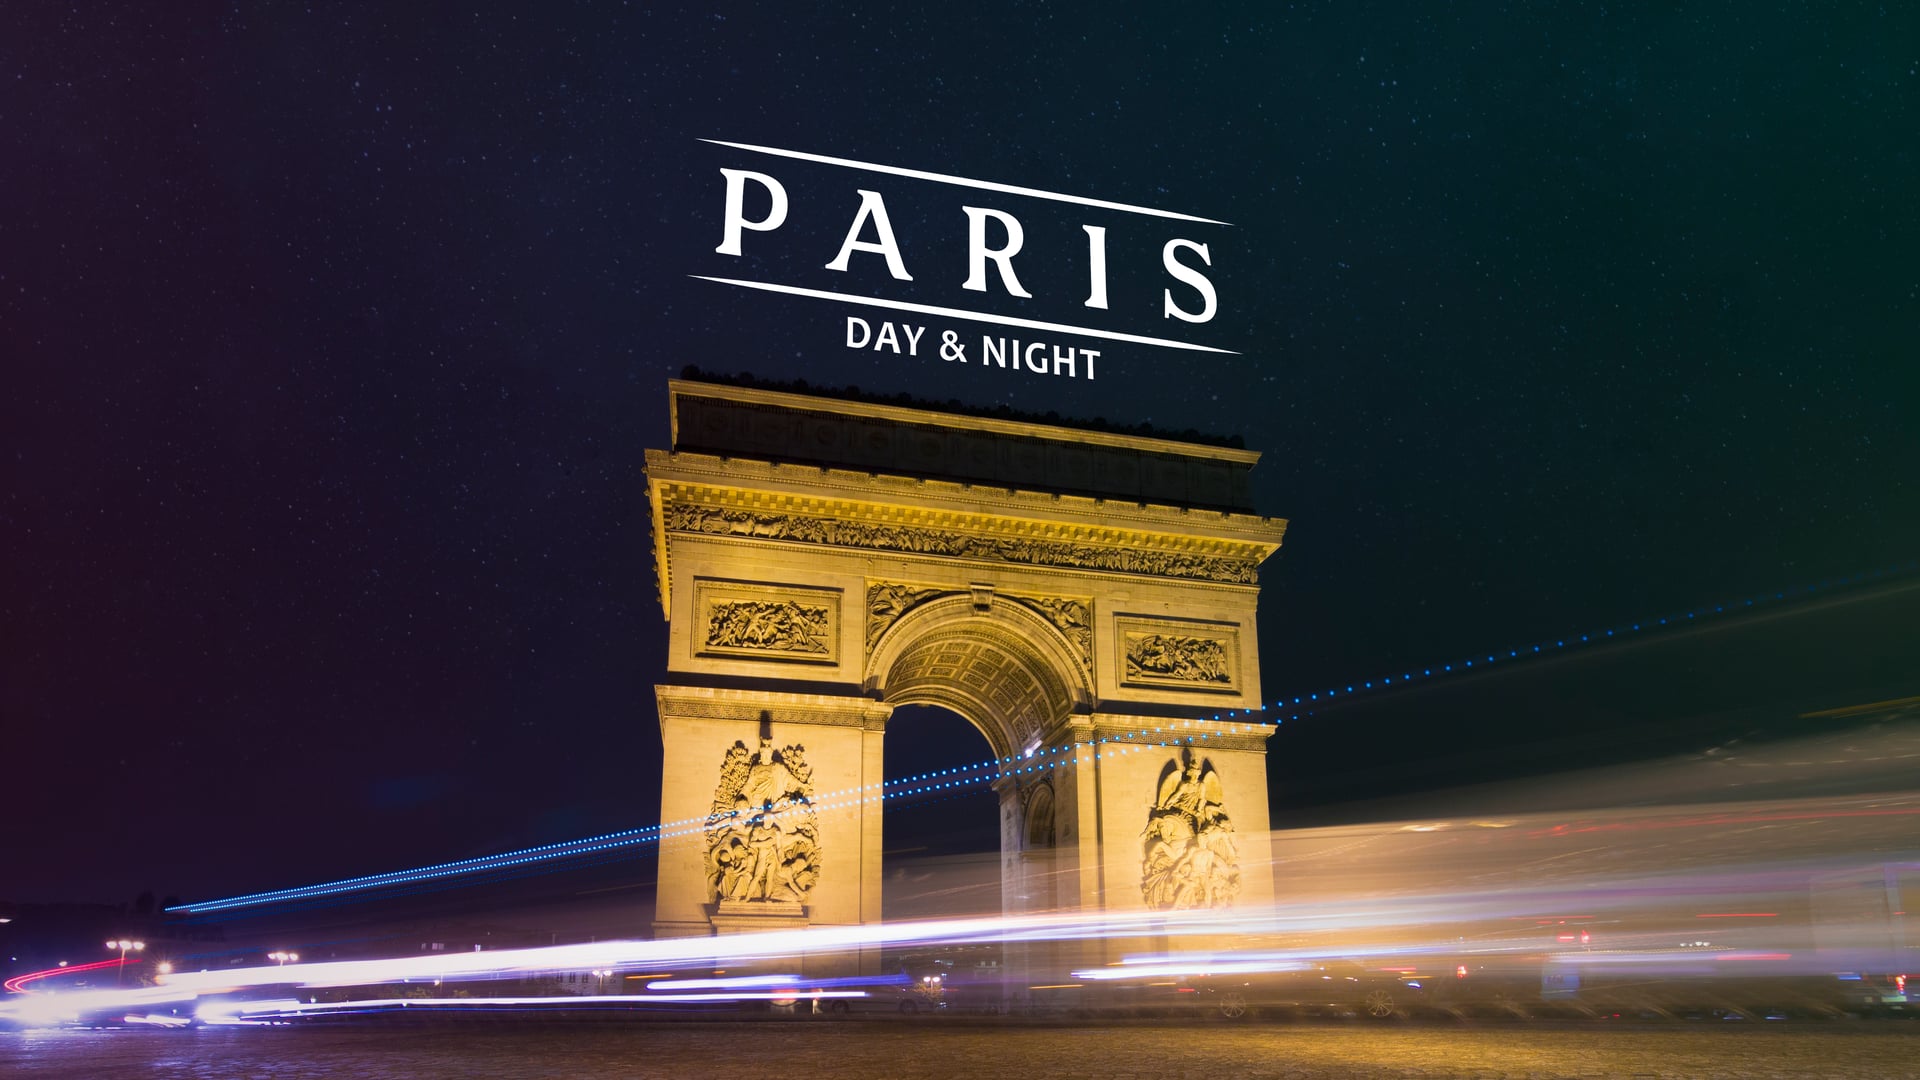 Одна ночь в париже. Париж. Париж днем. Наружная реклама Парижа ночью. Париж наши дни.